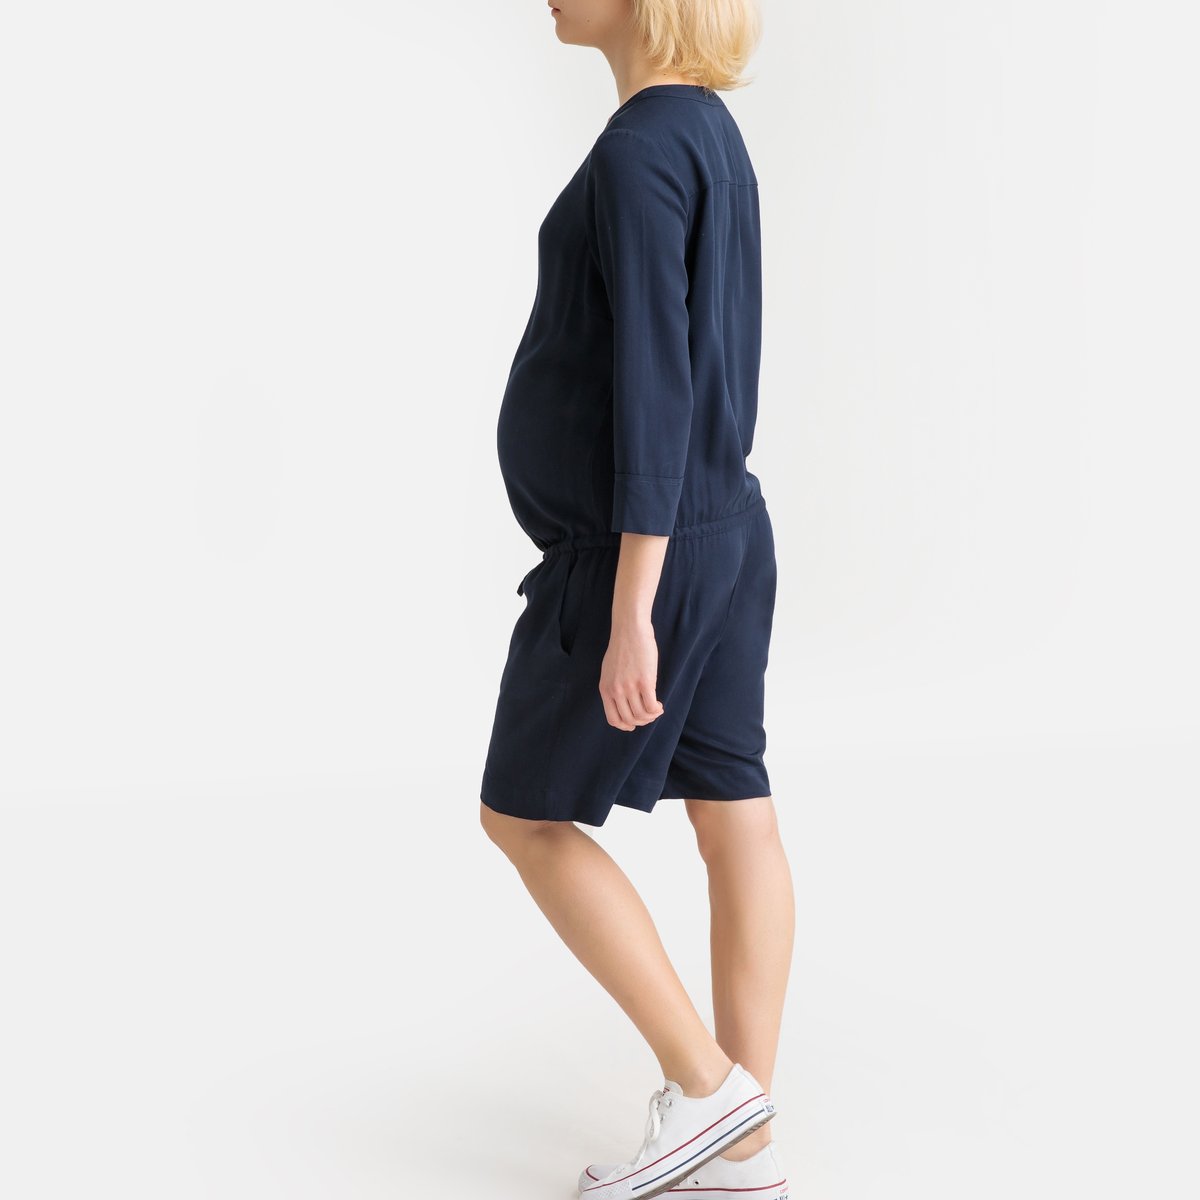 Комбинезон La Redoute С шортами для периода беременности 38 (FR) - 44 (RUS) синий, размер 38 (FR) - 44 (RUS) С шортами для периода беременности 38 (FR) - 44 (RUS) синий - фото 4